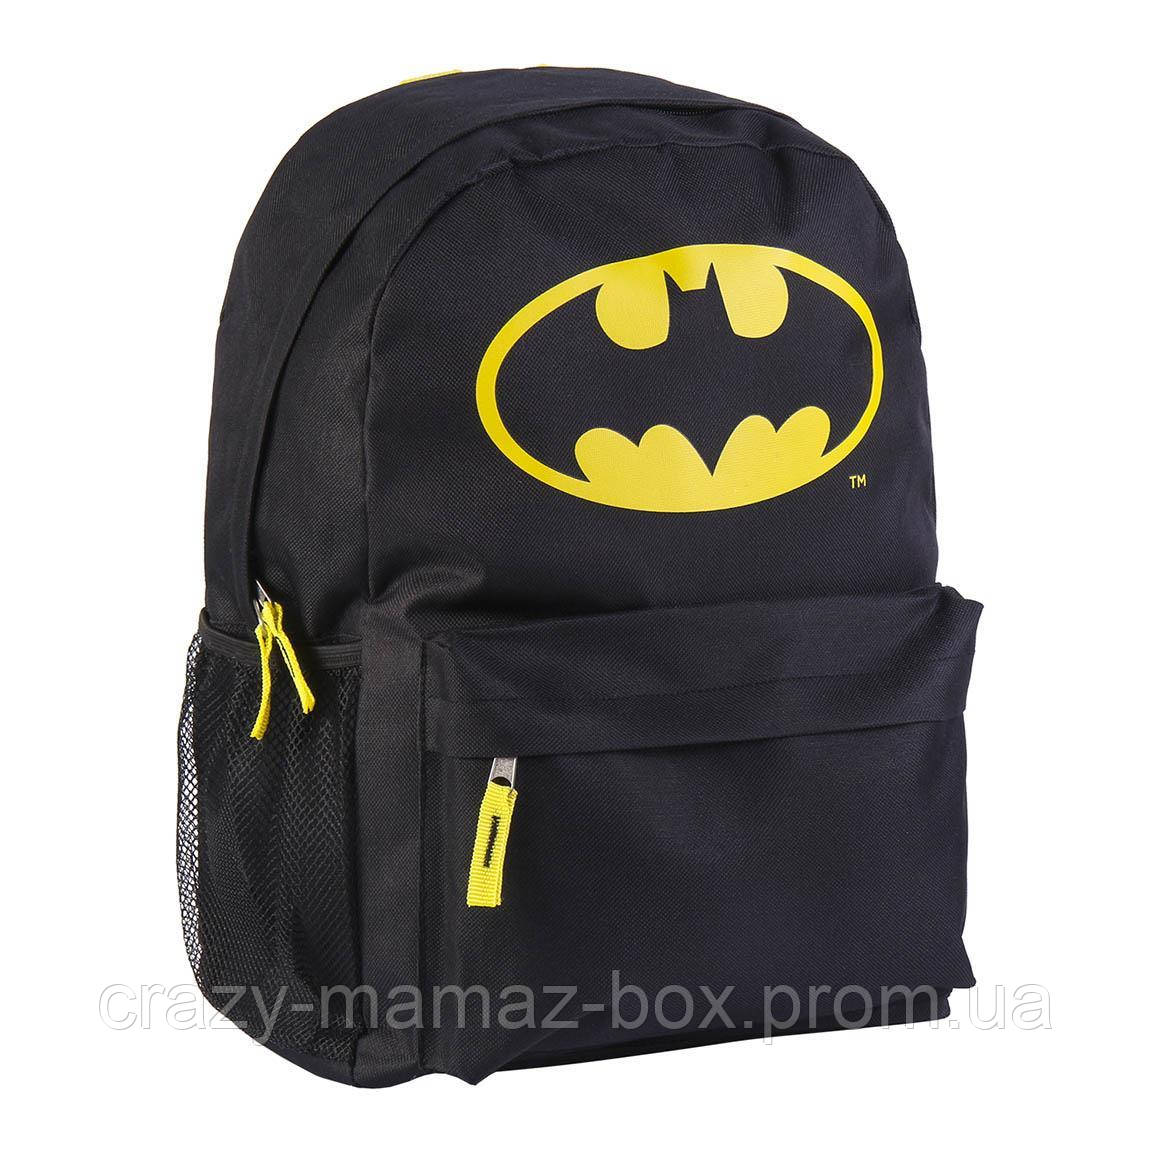 Дошкільний рюкзак Бетмен Batmen 6-12 років